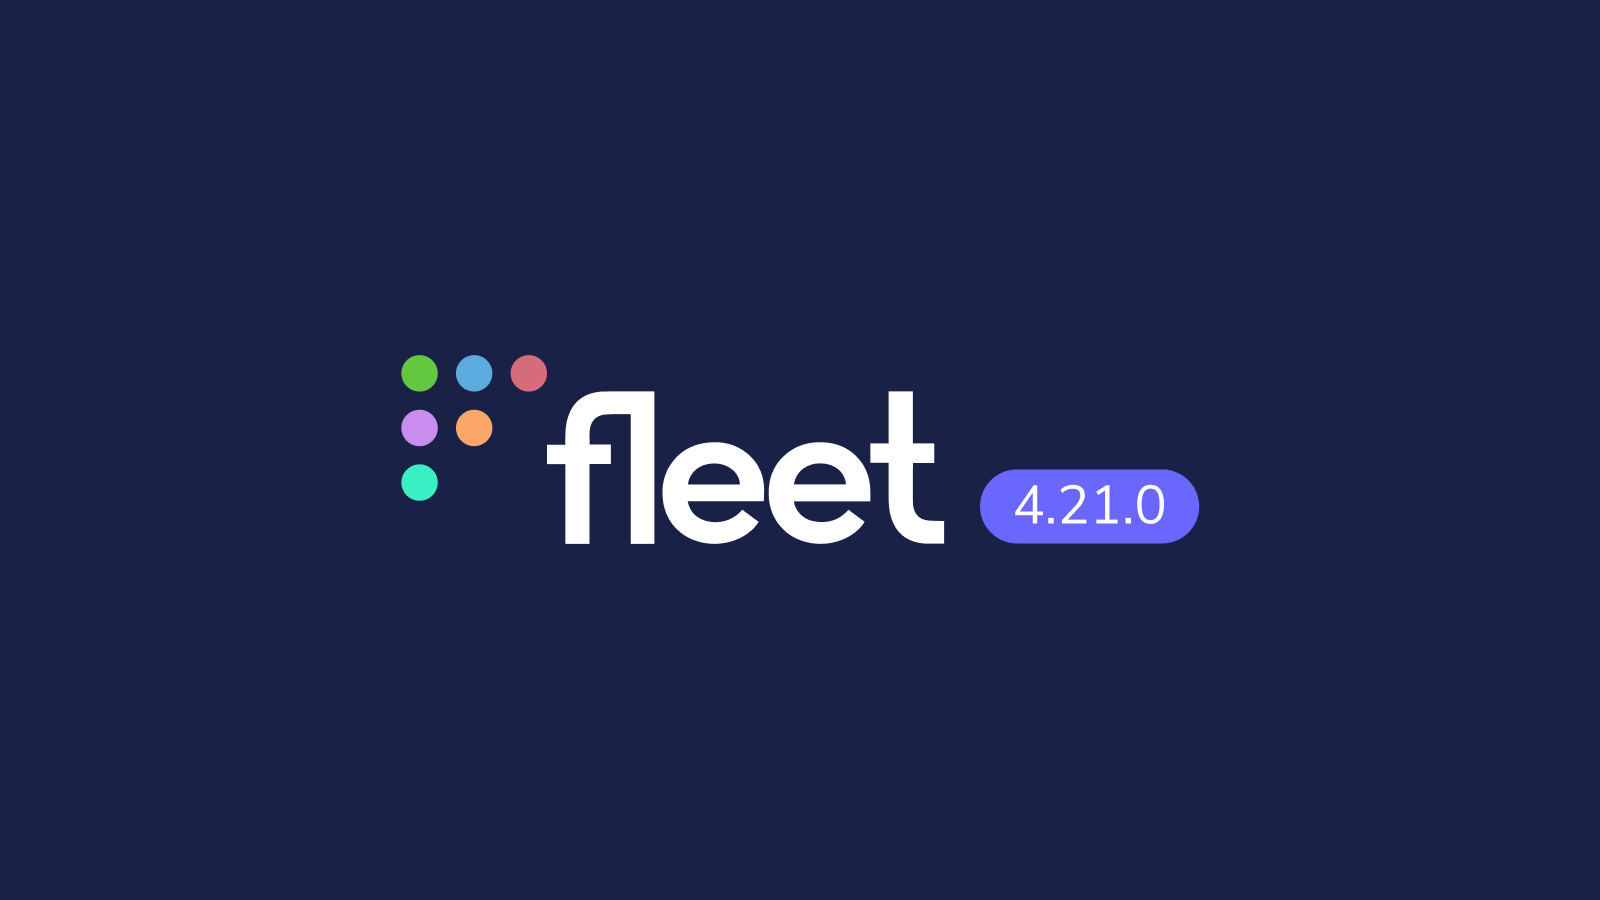 Fleet 4.21.0 release